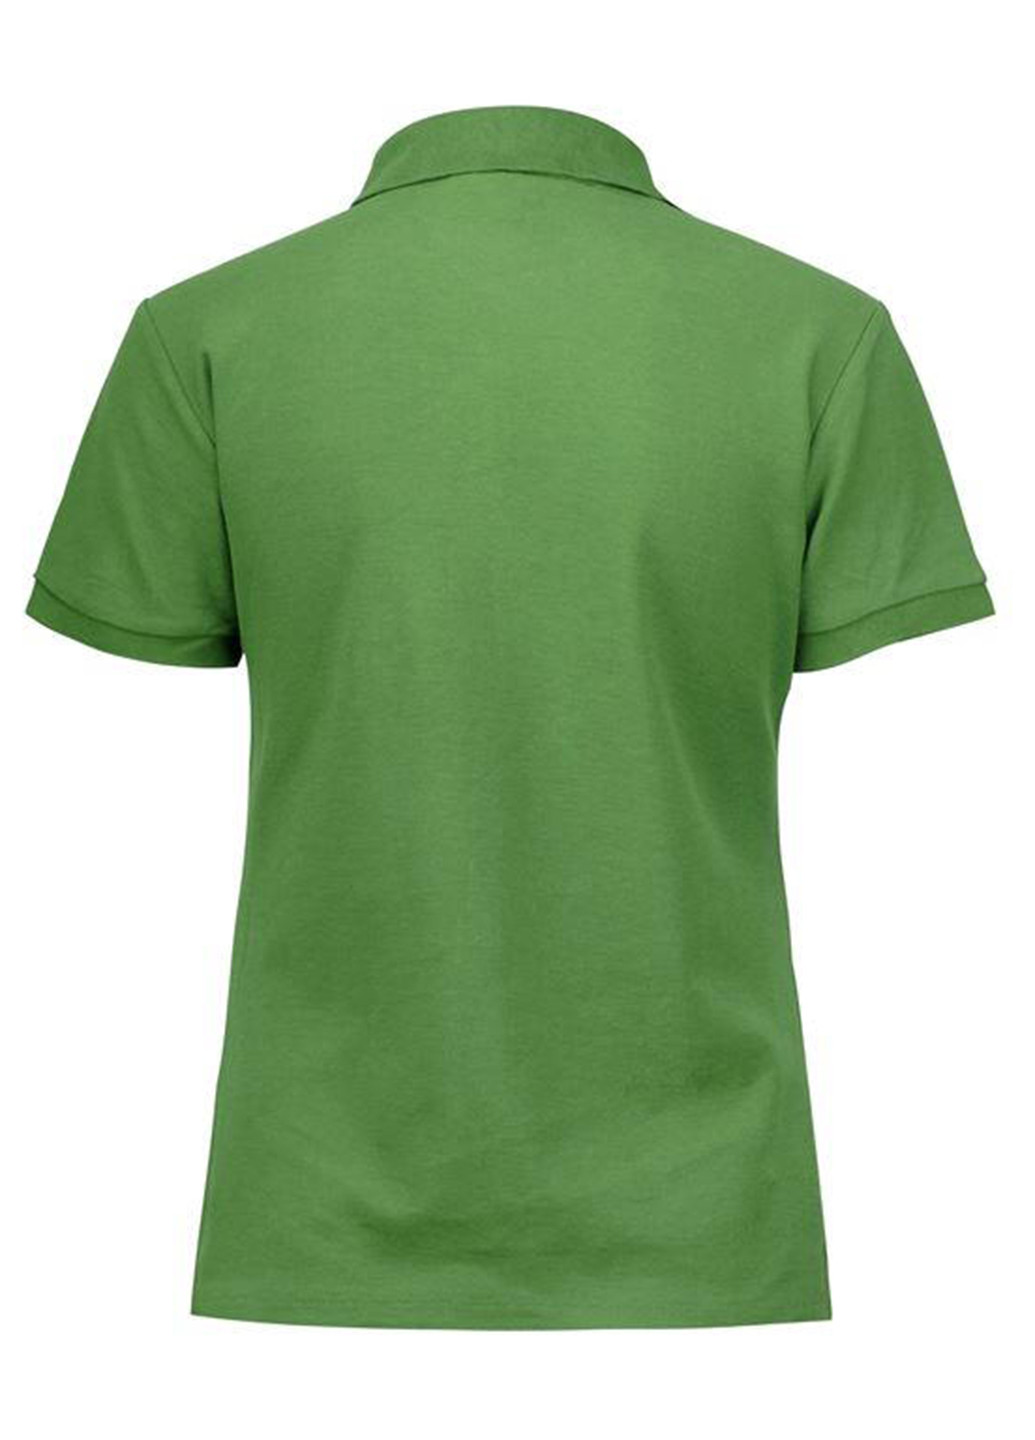 Салатовая женская футболка-поло Lee Cooper с логотипом